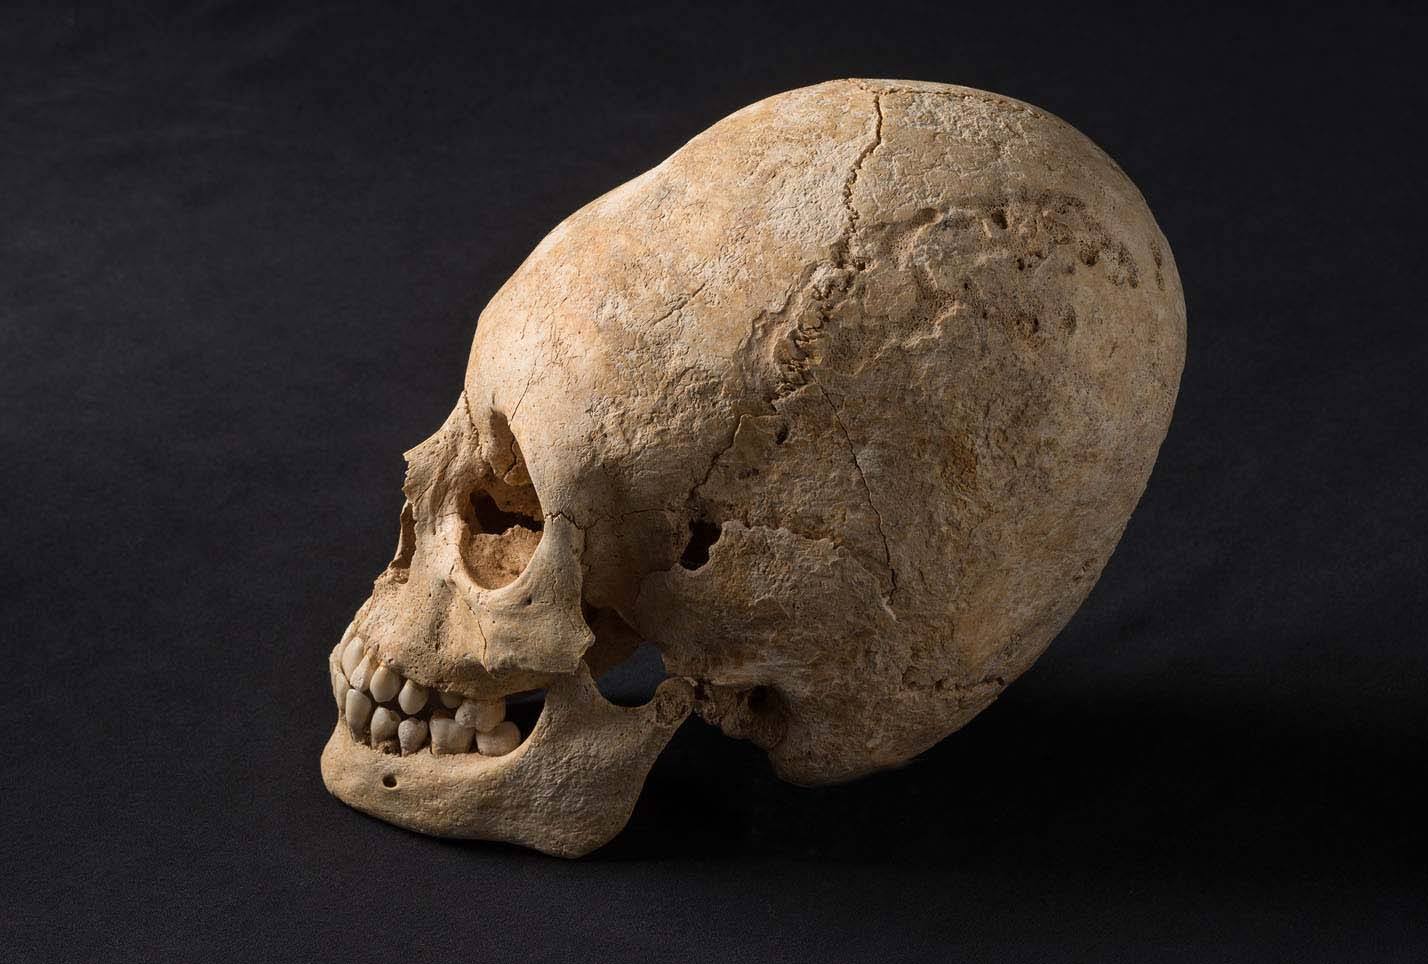 Alsace Hun Deformed Skull